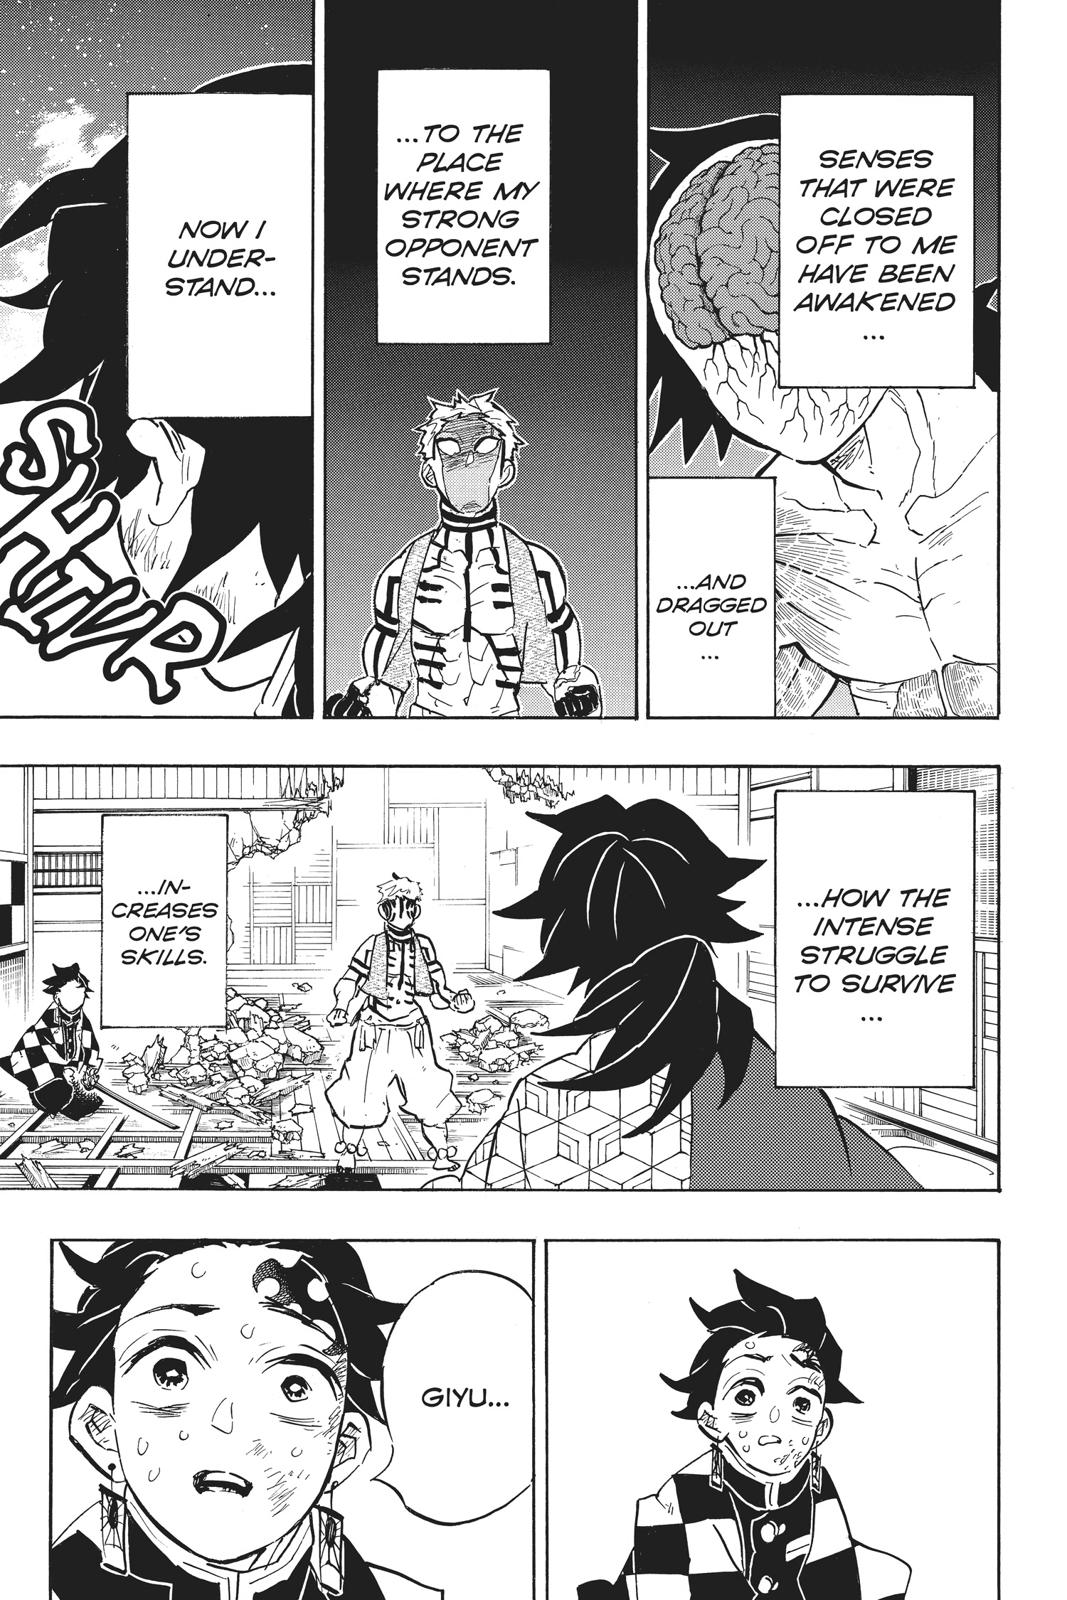 Demon Slayer Manga Manga Chapter - 150 - image 2